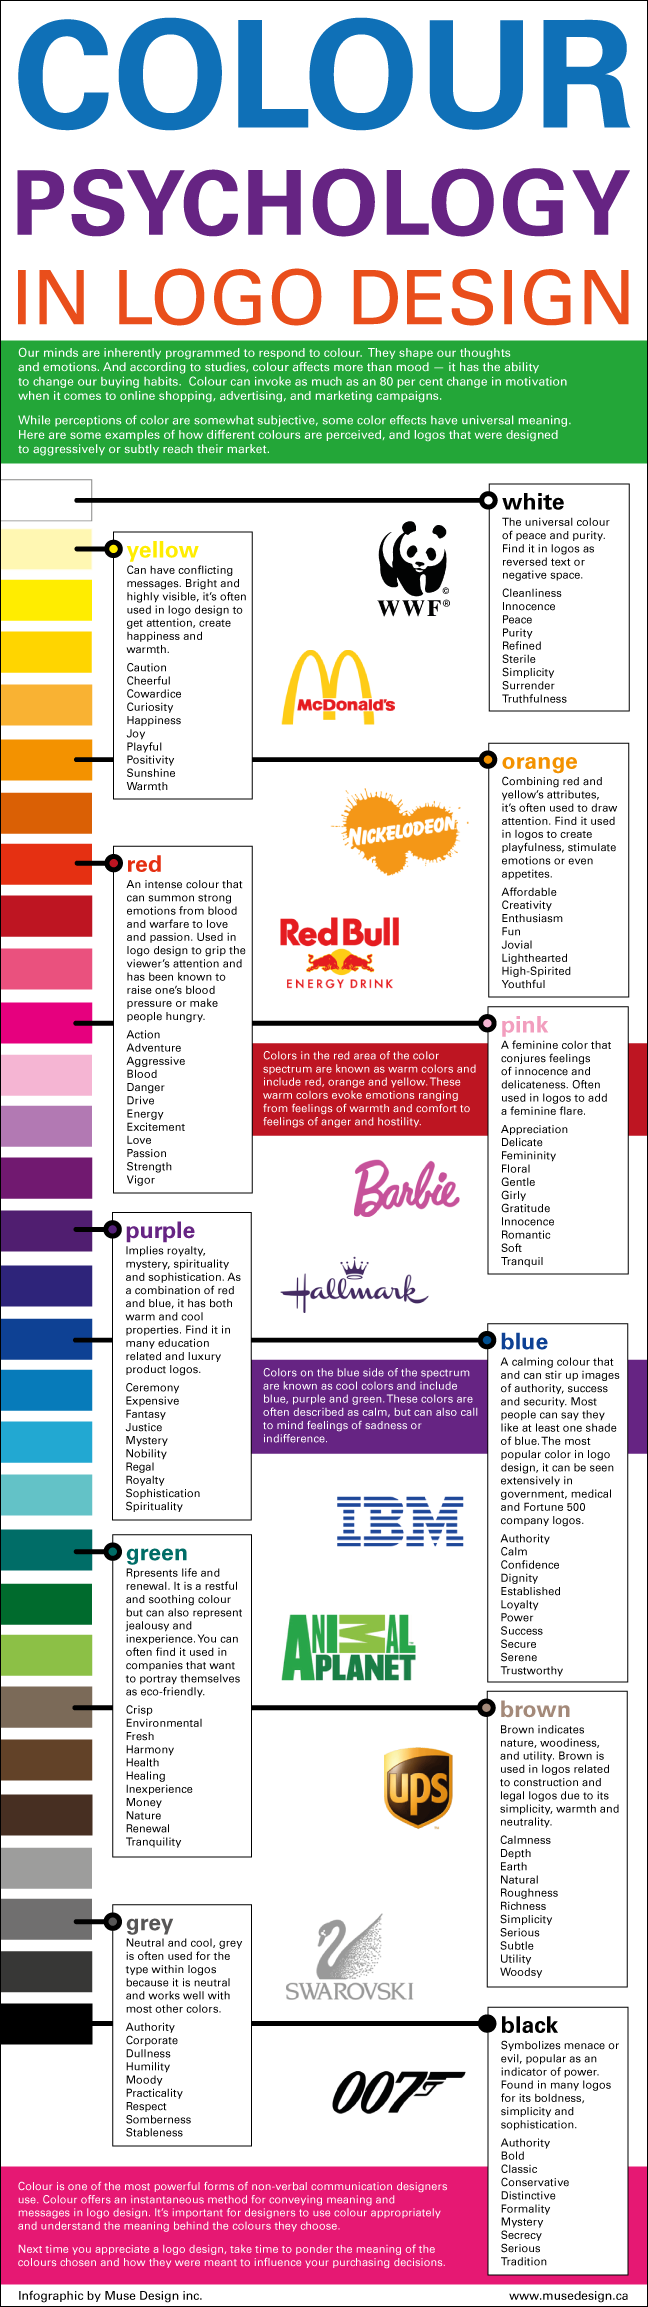 Color psychology in logo design.